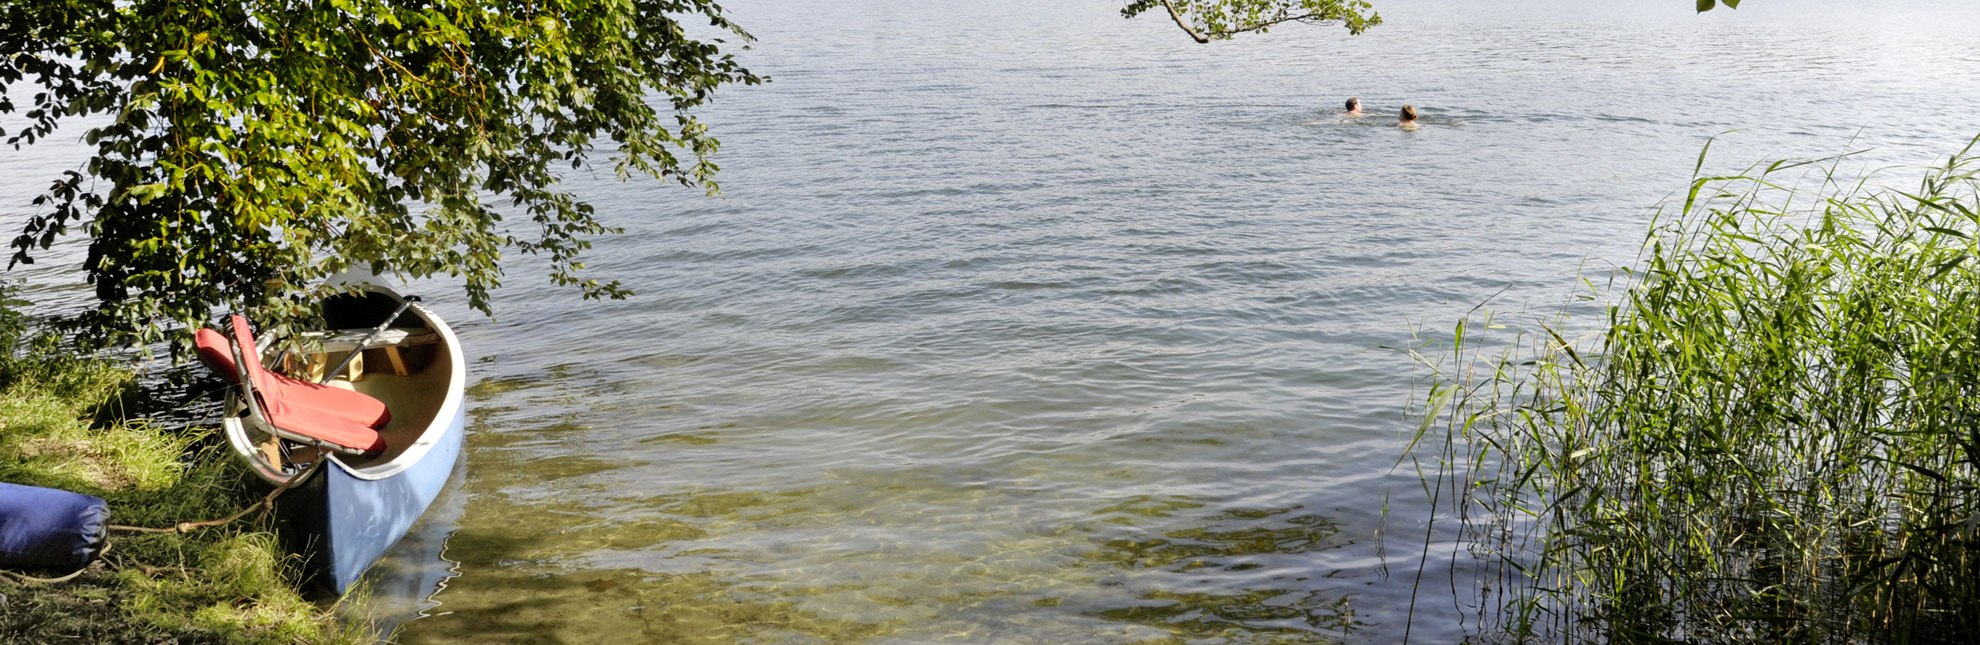 Ein Sprung in das klare Wasser des Schaalsees sorgt für Erfrischung., © photocompany GmbH / HLMS GmbH